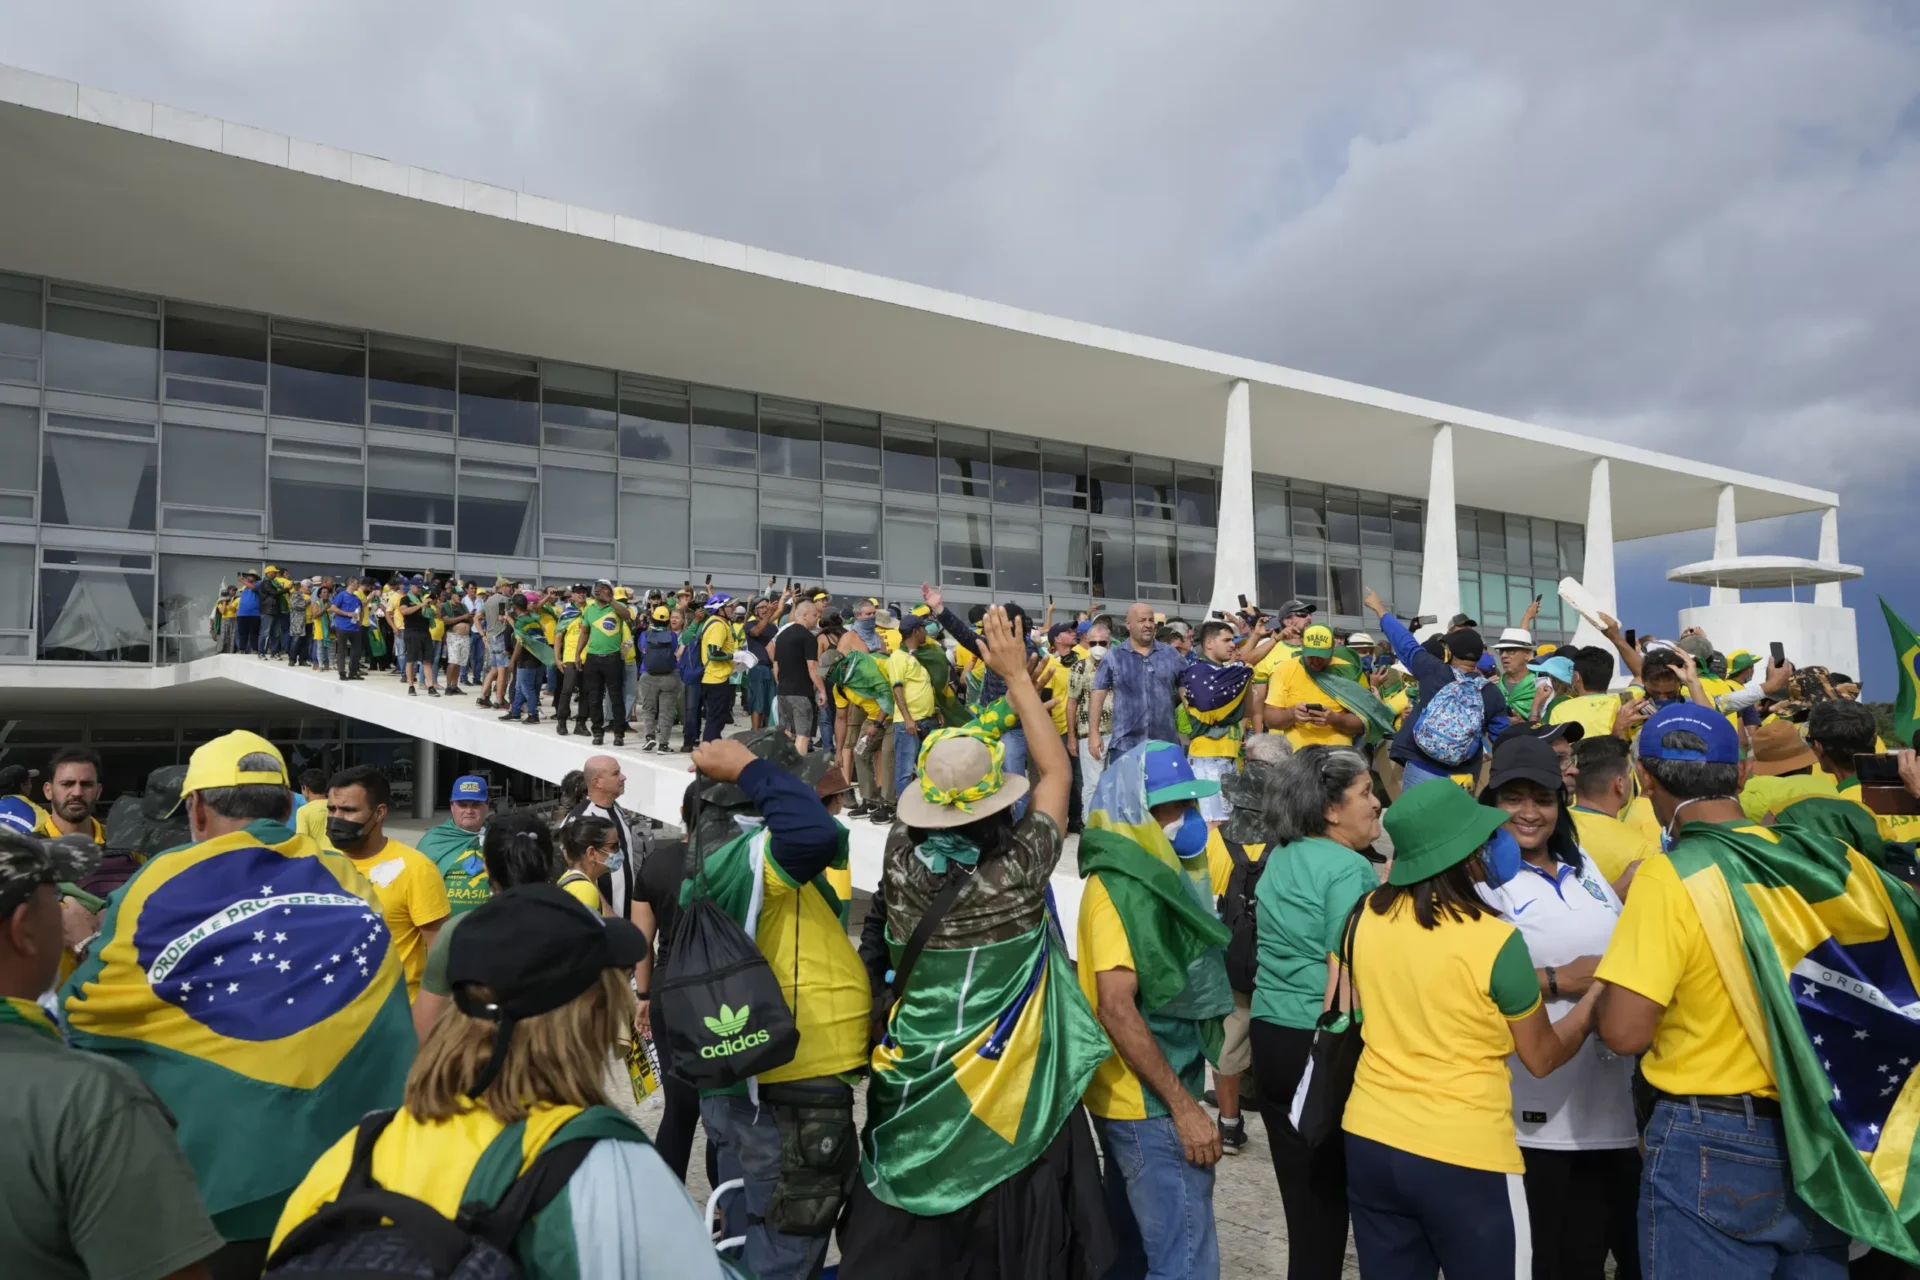 Los alborotadores de Brasil conspiraron abiertamente en línea, lanzaron una gran ‘fiesta’